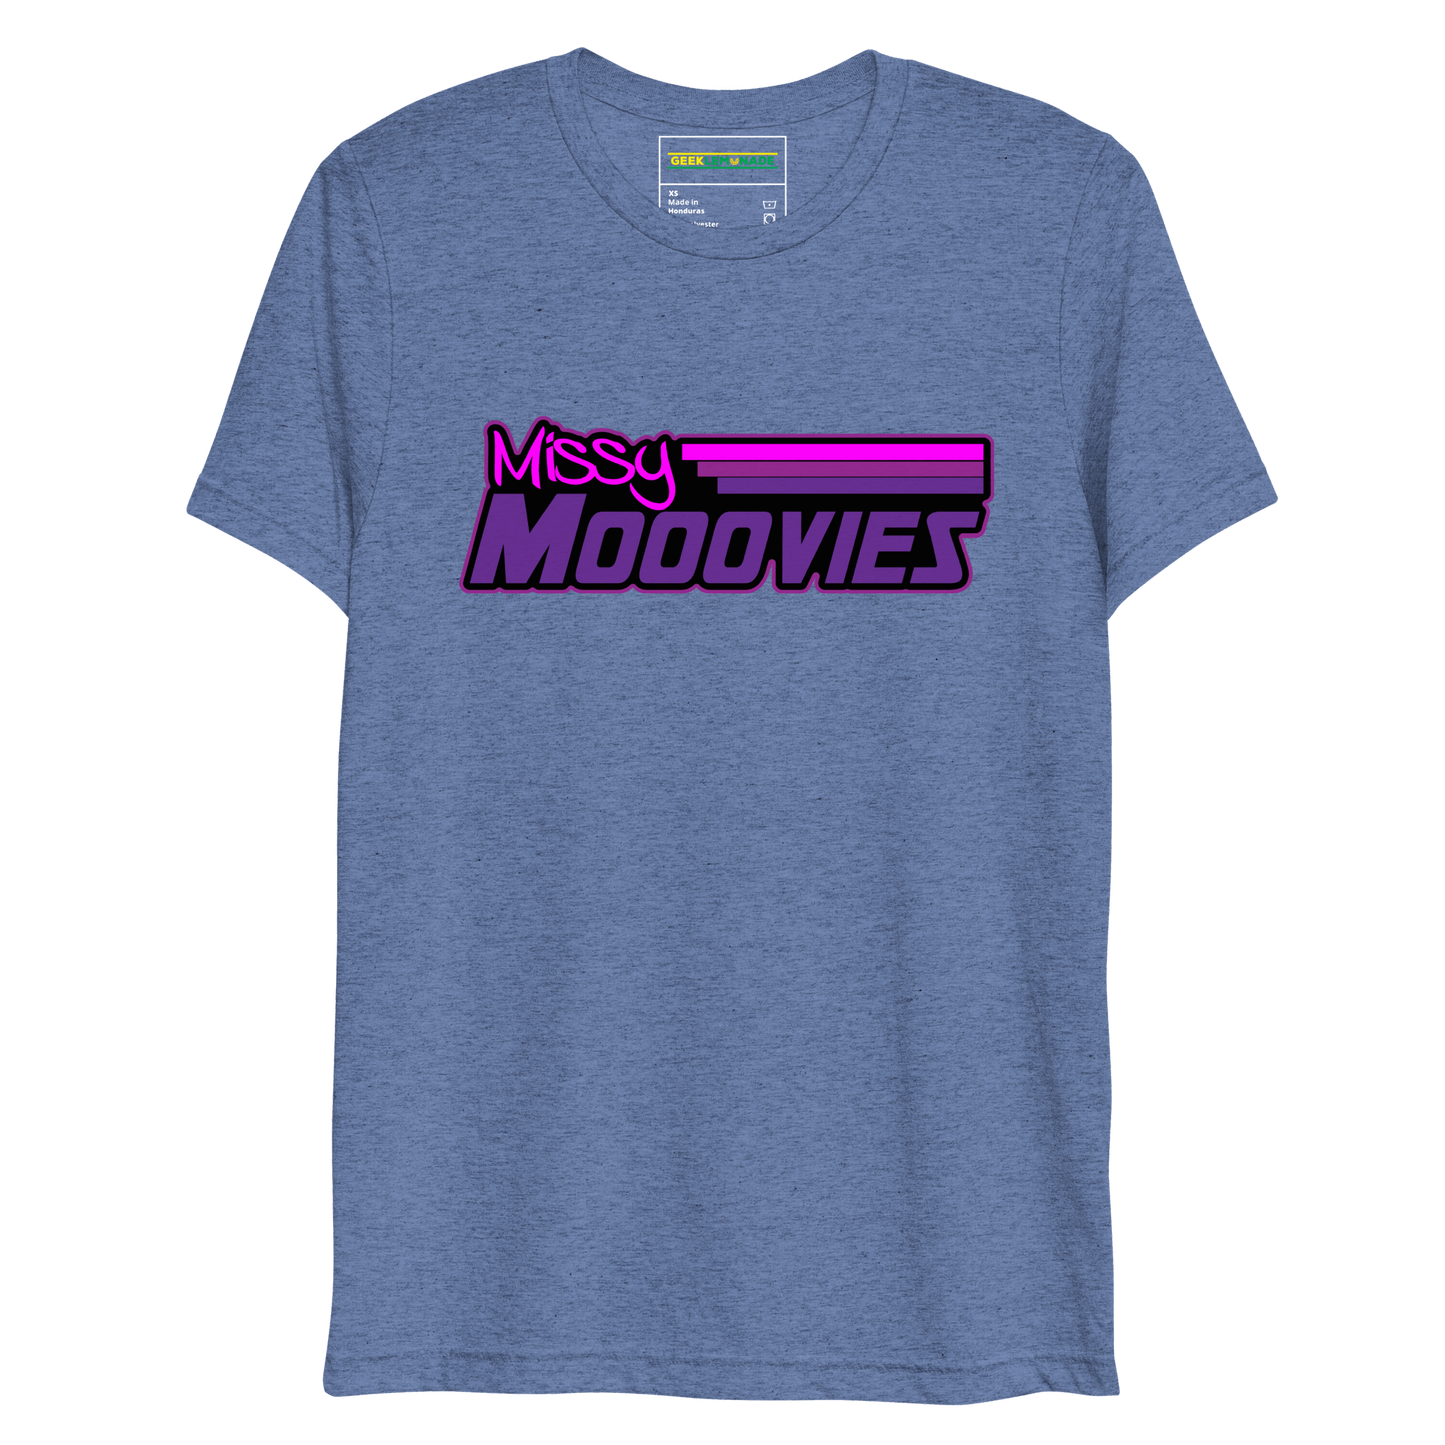 GeekLemonade Missy Mooovies Black Short sleeve t-shirt